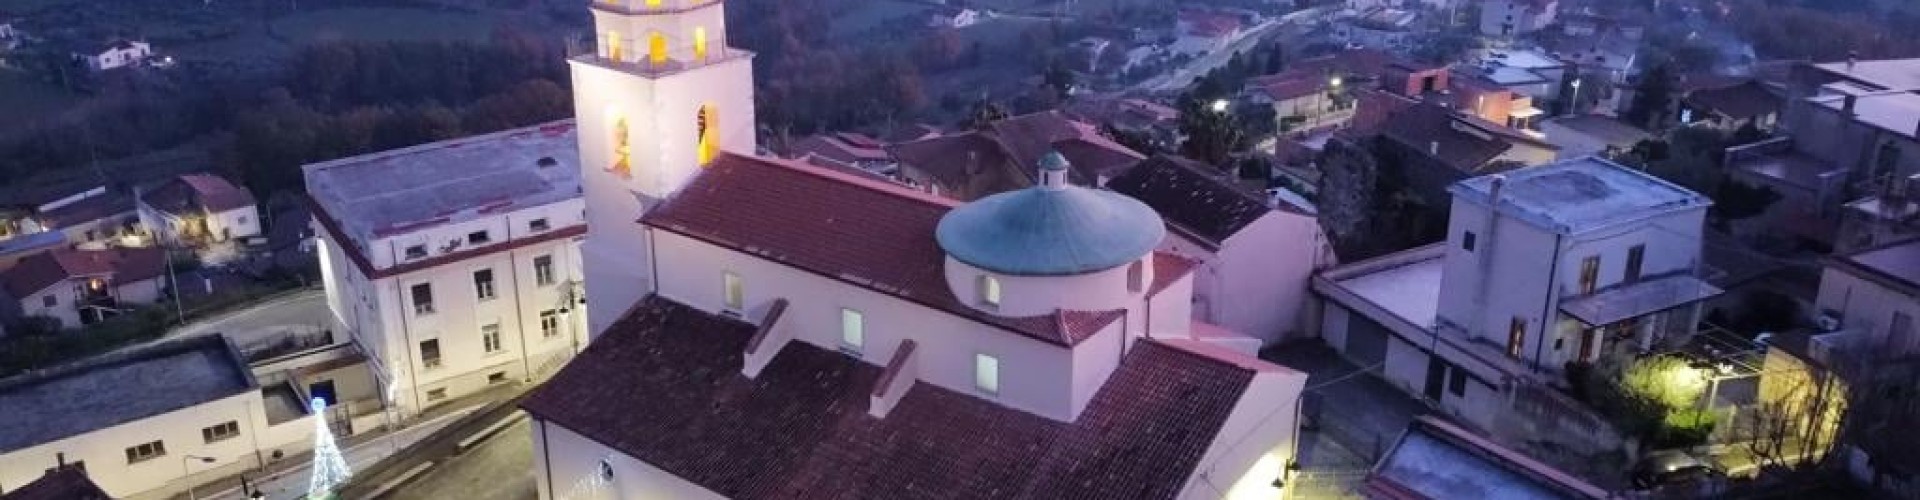 Comune di San Vittore del Lazio - Restauro Chiesa Santa Maria della Rosa